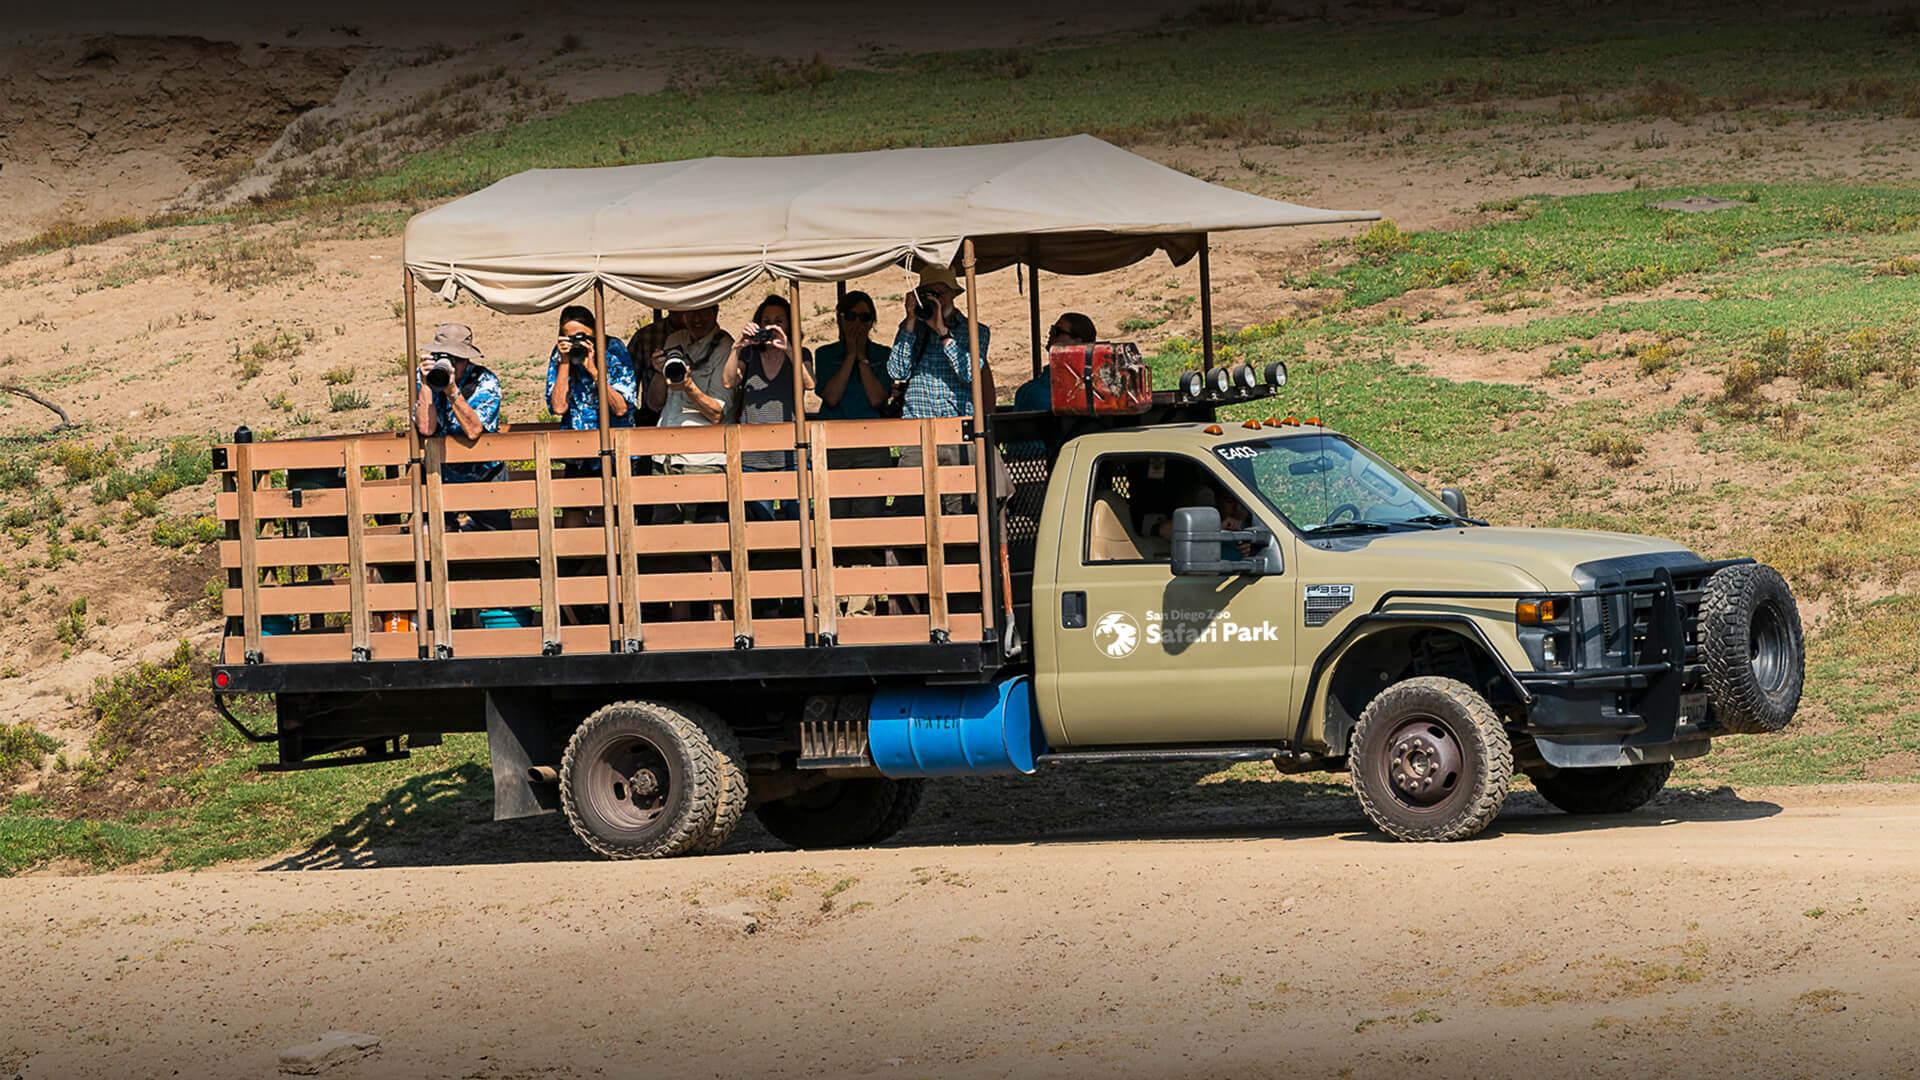 Caravan Safari at the Safari Park